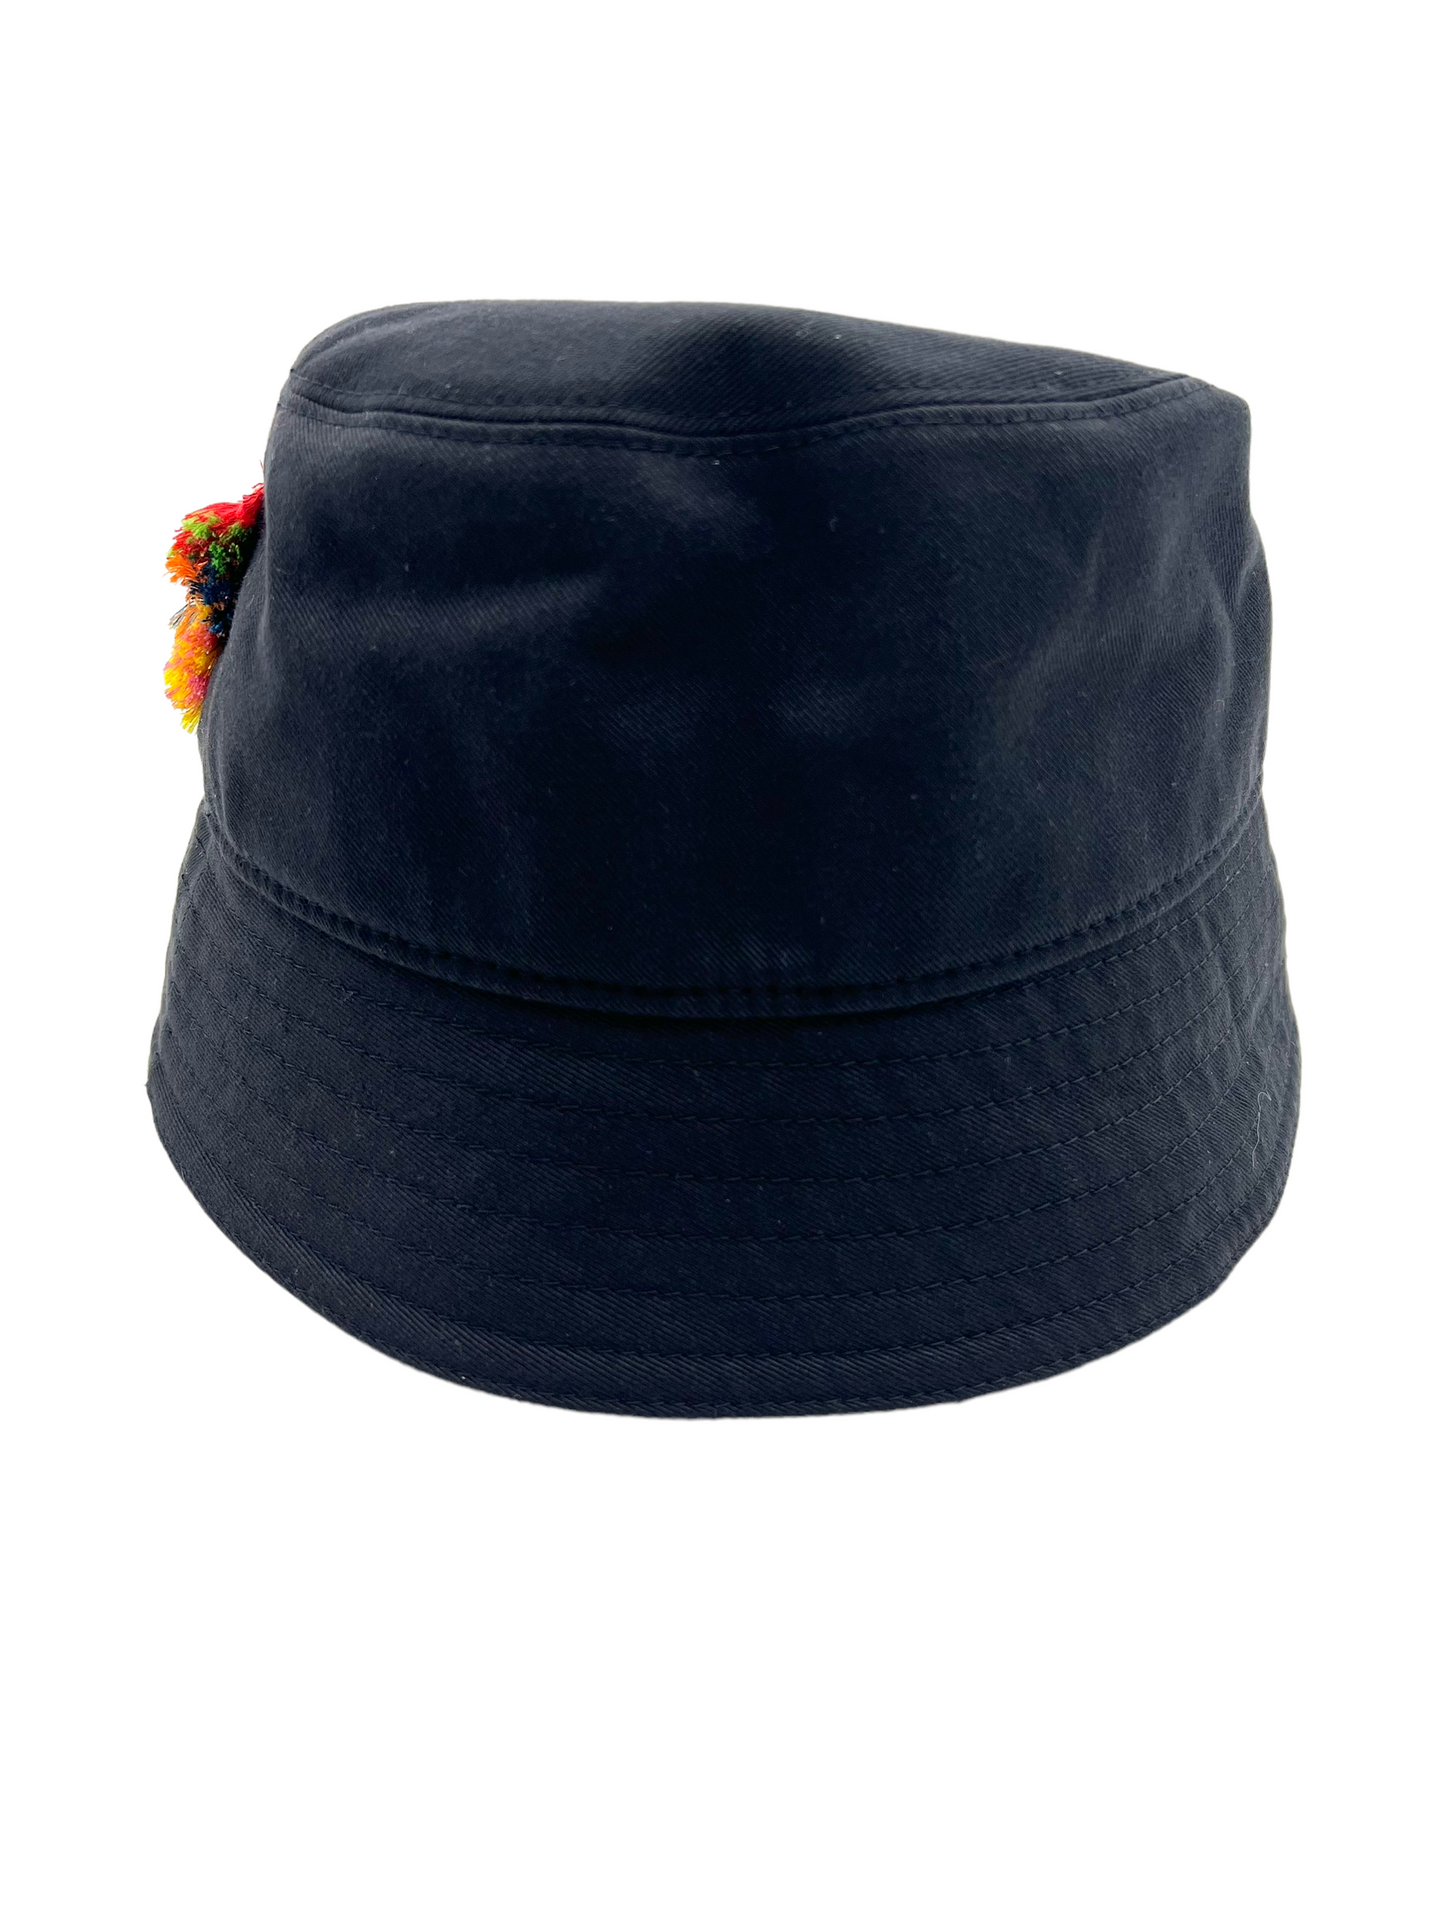 Lanvin Black Colorful Fringe Logo Size 60 Bucket Hat